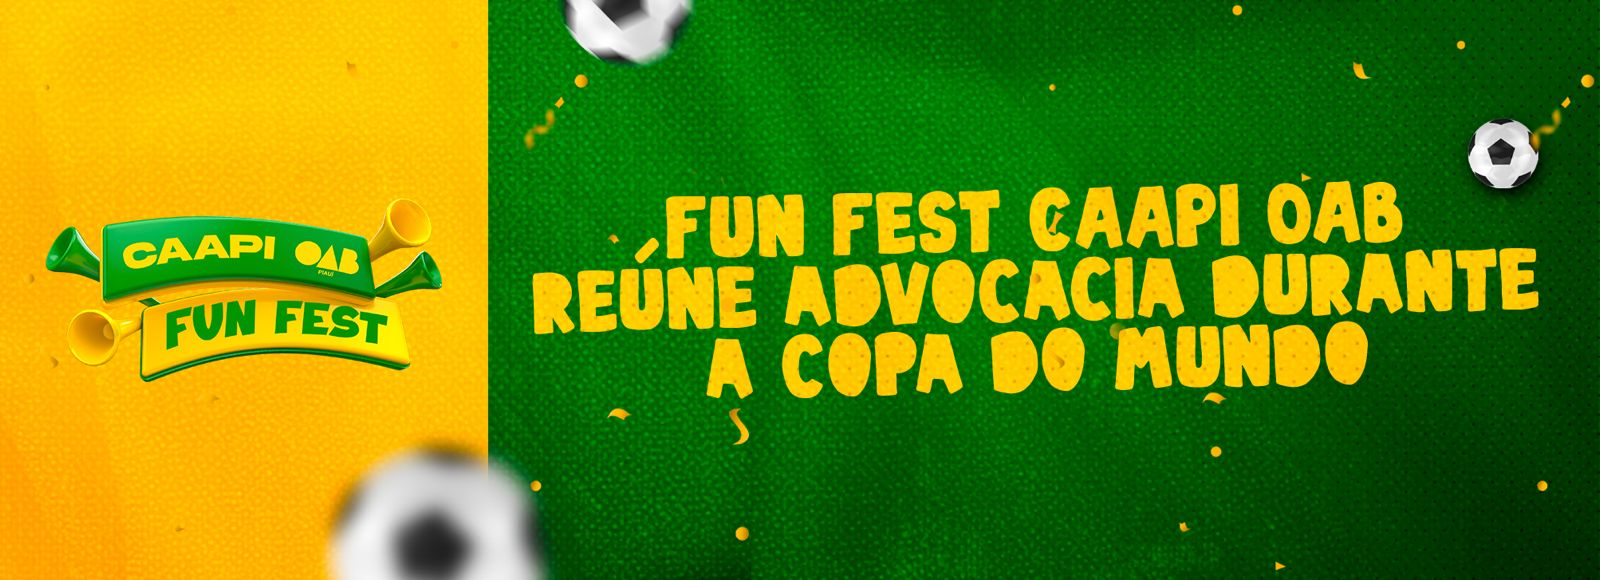 “CAAPI OAB Fun Fest” reunirá torcedores na Copa do Mundo